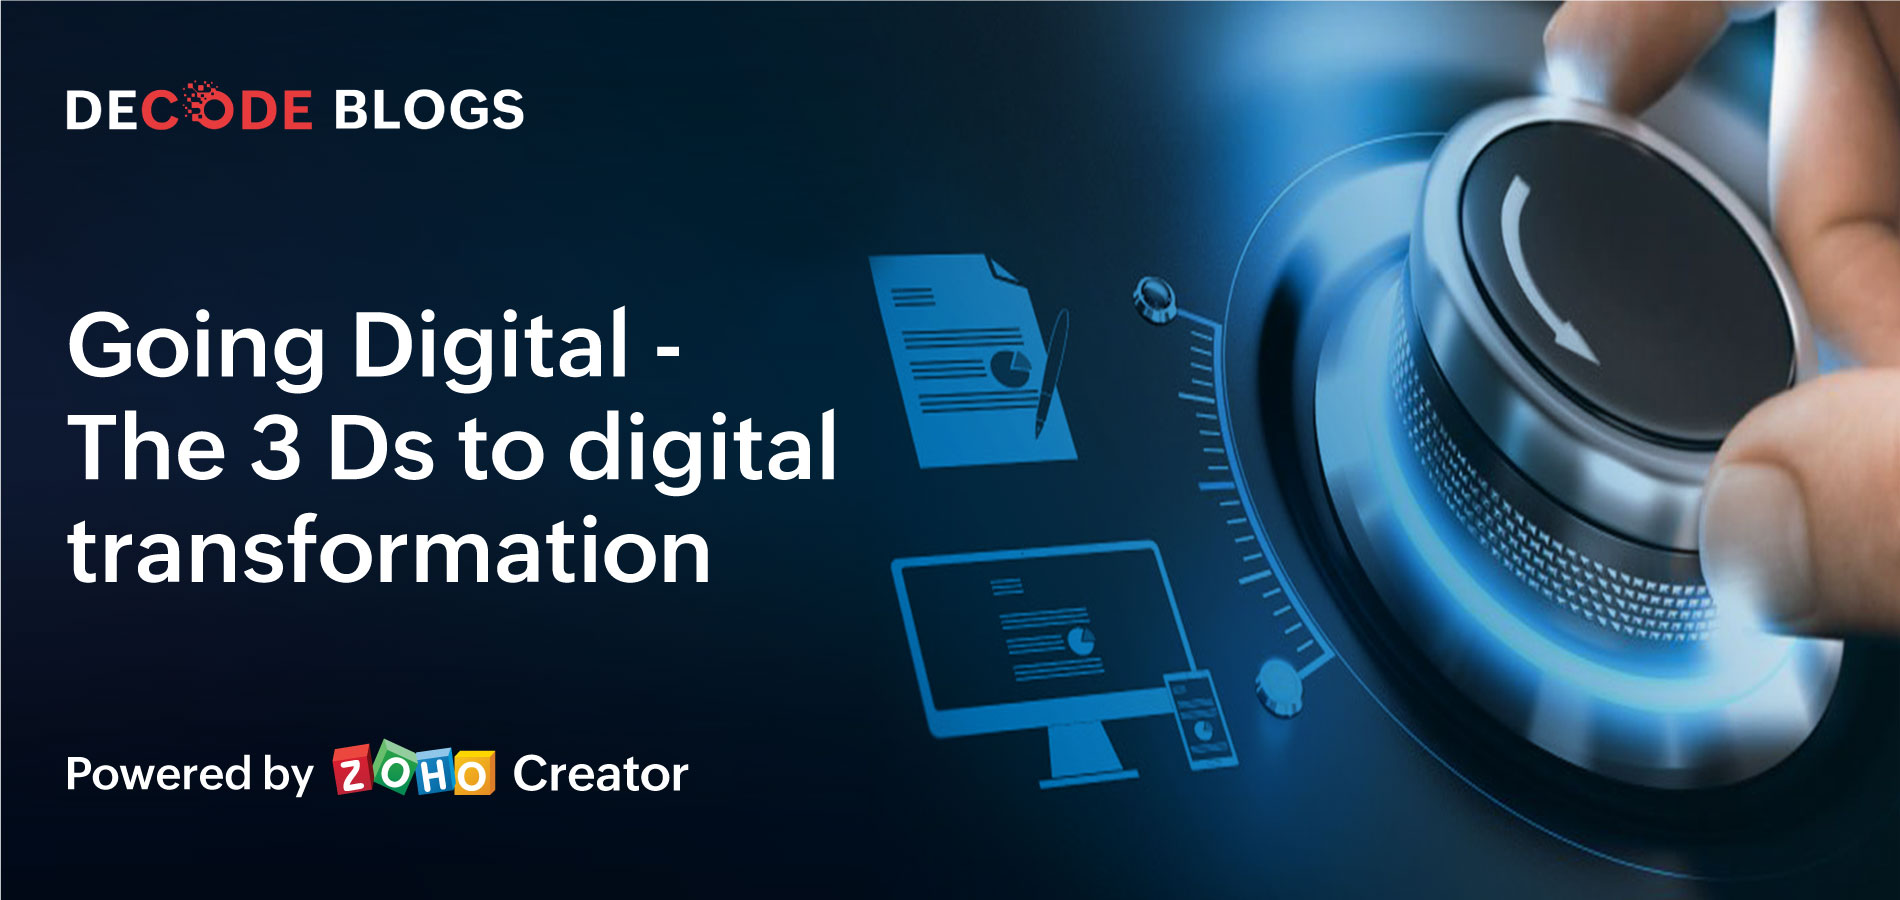 3D's of digital transformation